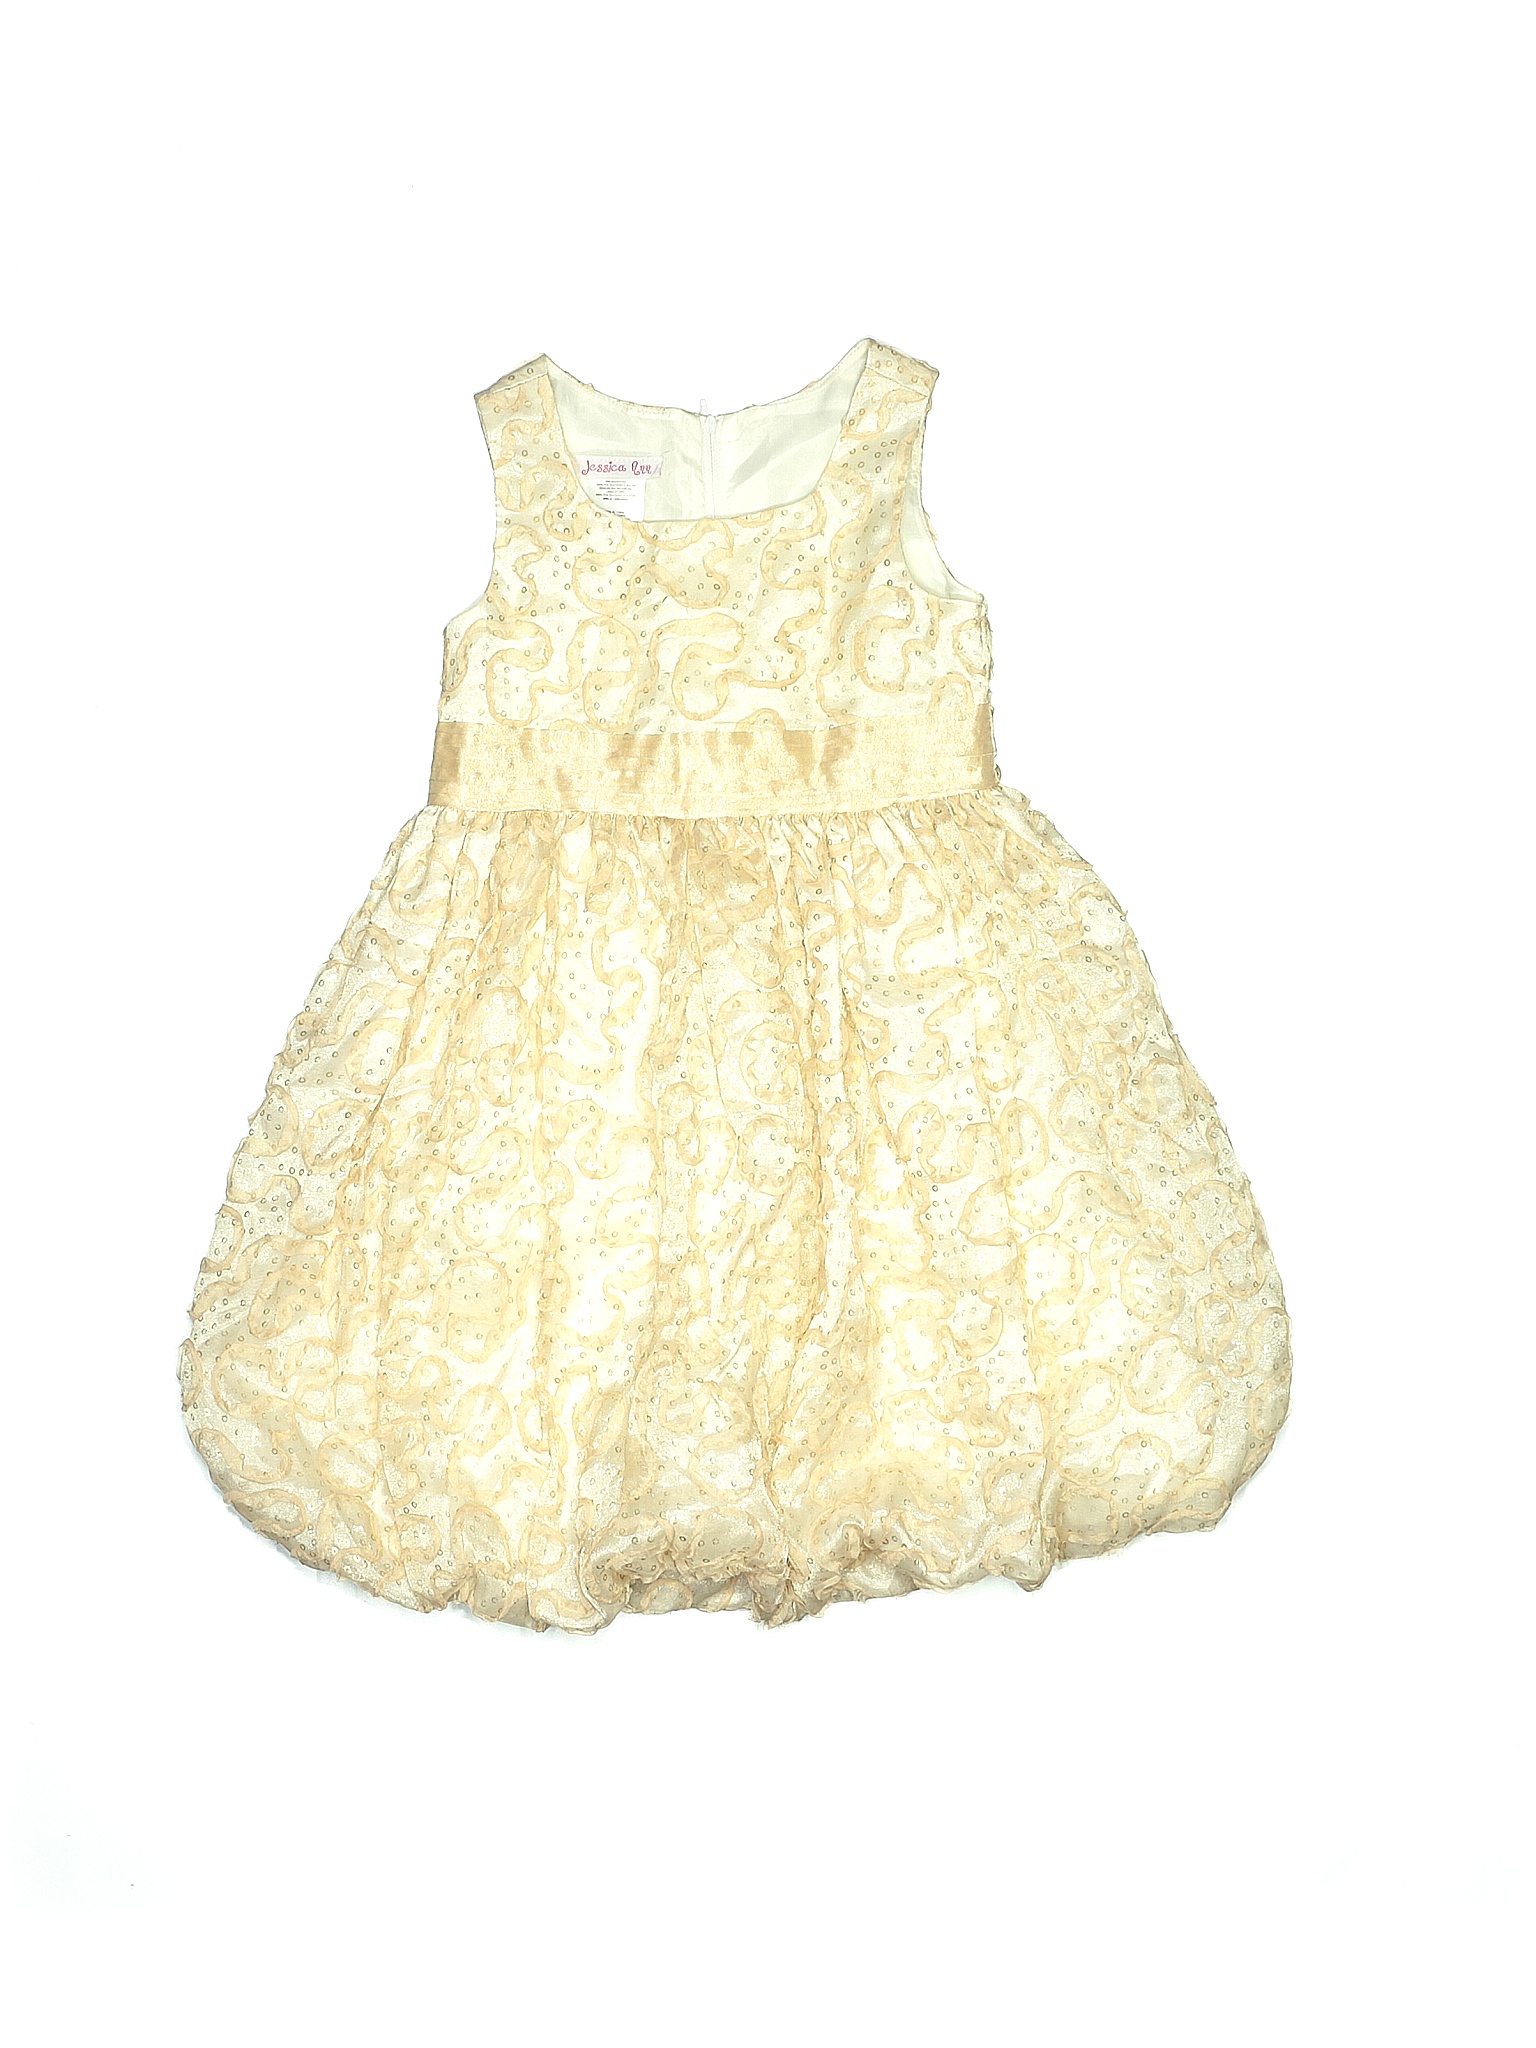 Jessica Ann baby black & white dress size 0-3 months 3-6 months & 18 months 